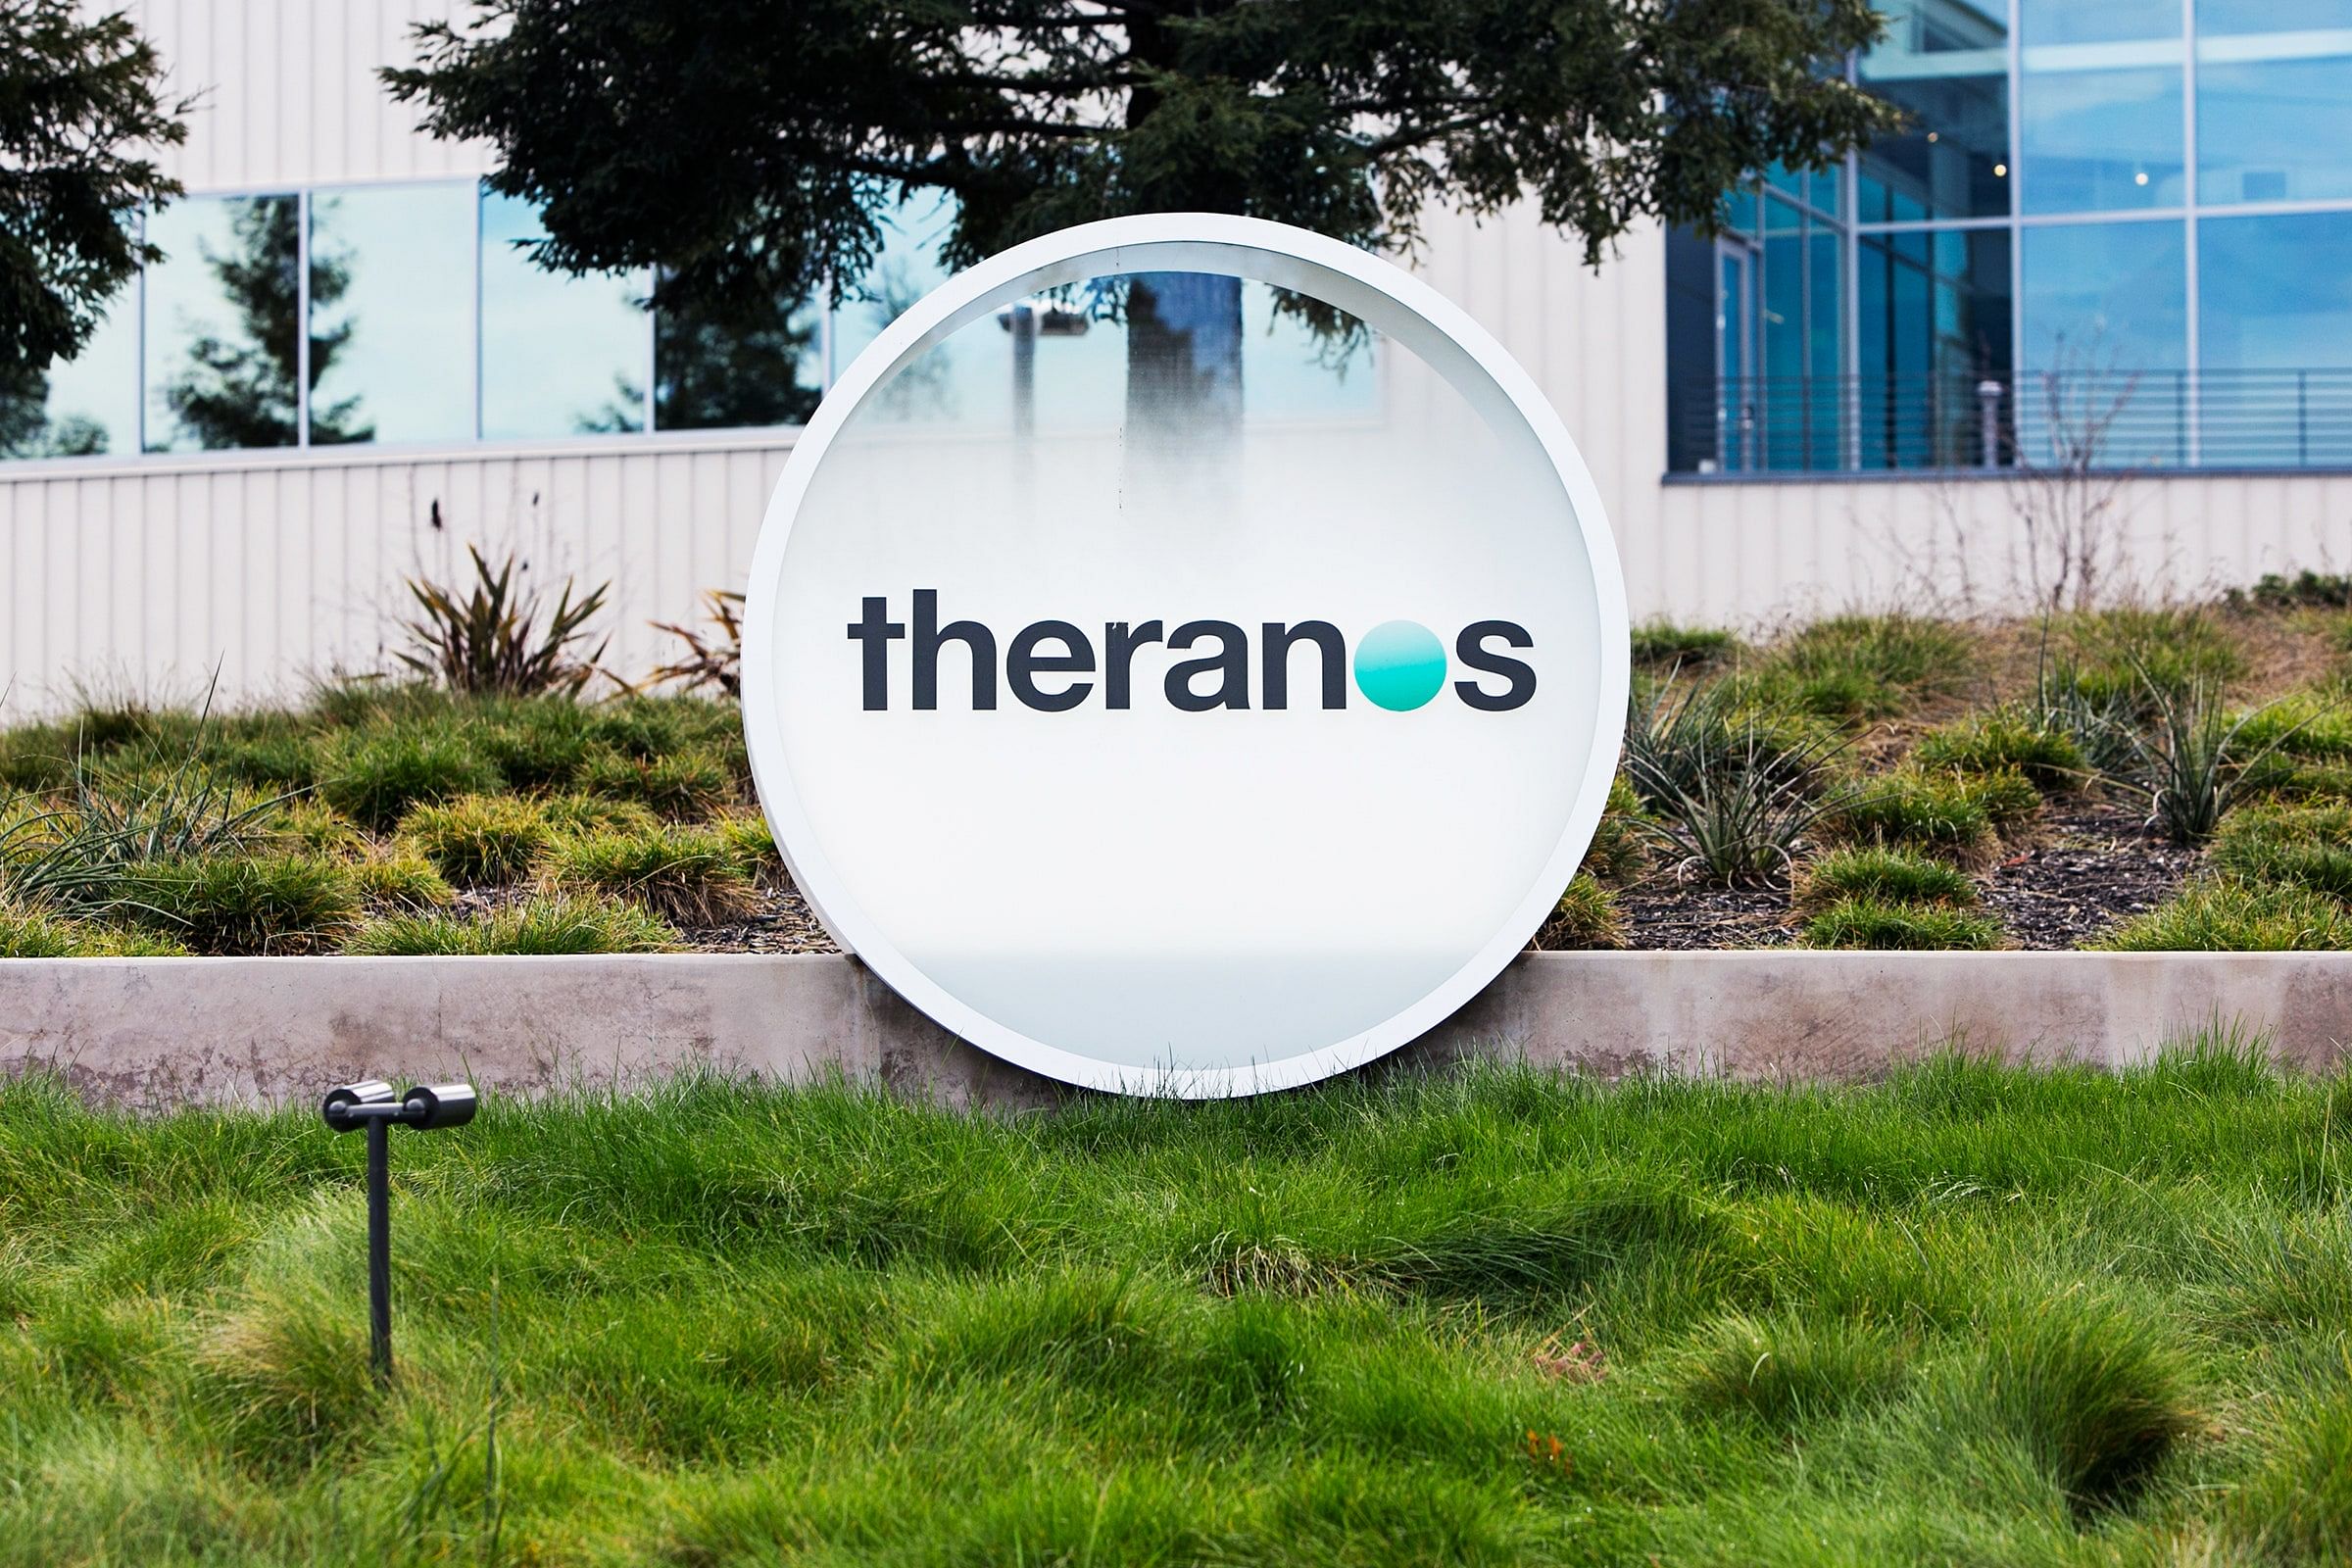 It was clear to them. Theranos компания. Theranos логотип. It-стартап в силиконовой долине. Теранос лаборатория.